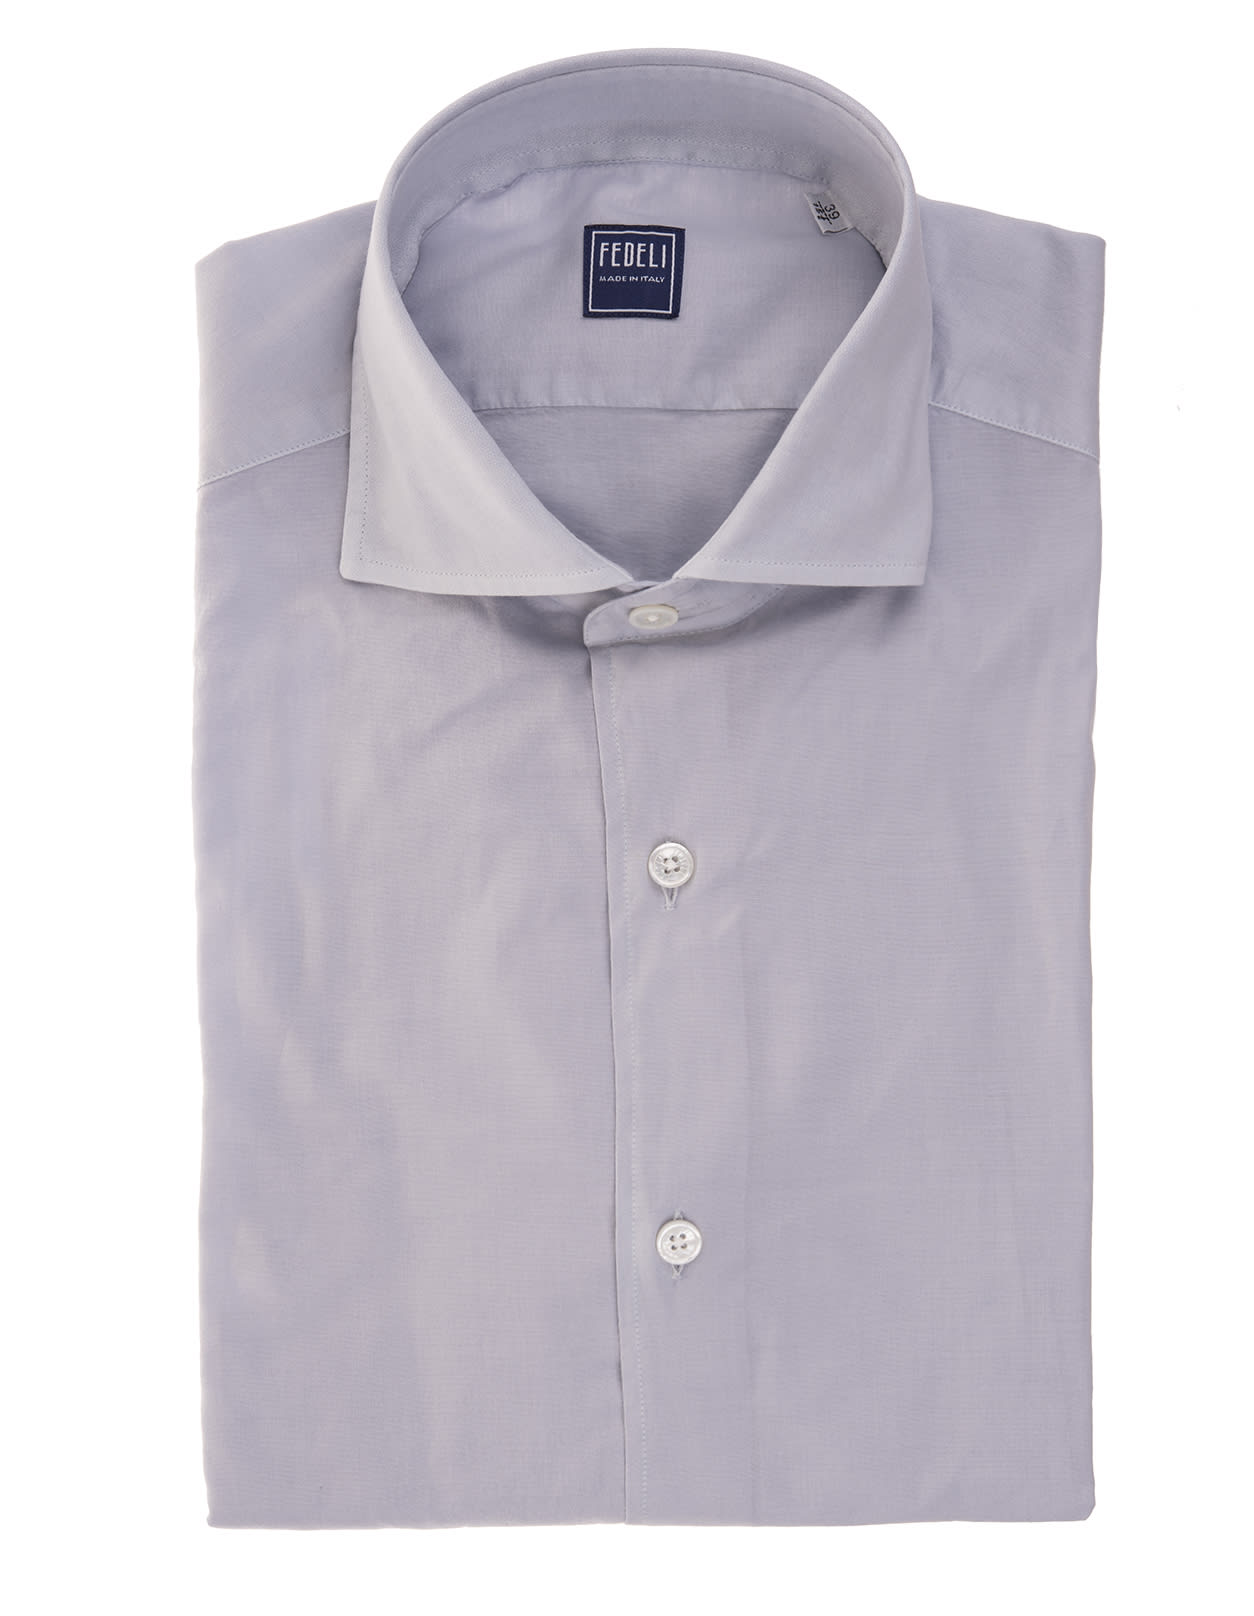 Fedeli Man Light Grey Lightweight Cotton Shirt